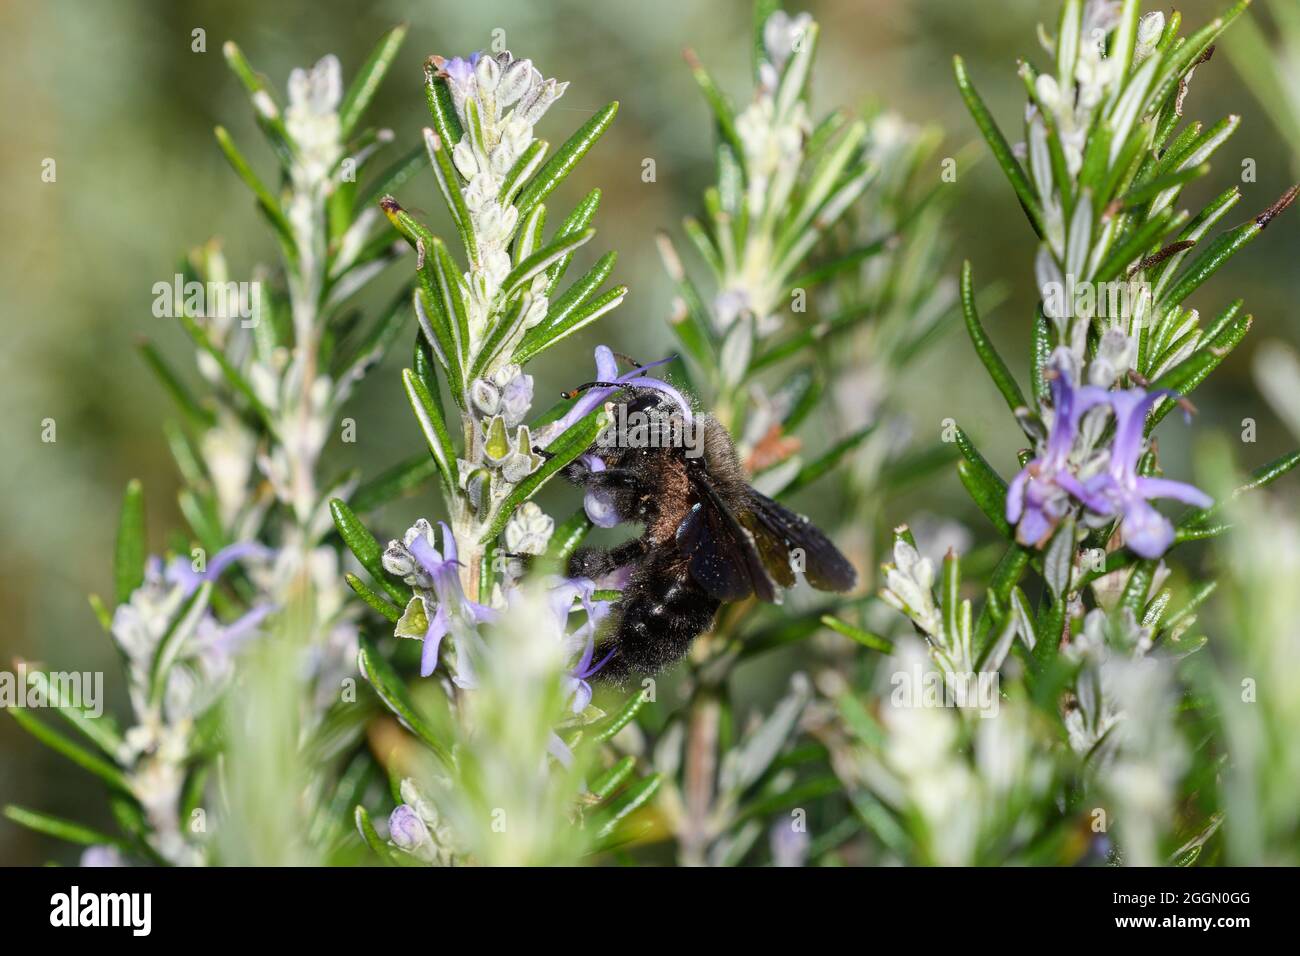 L'ape del carpentiere si nuote sui fiori del rosmarino, con i grani del polline dalla relativa testa che spazzolano contro il pistil del fiore Foto Stock